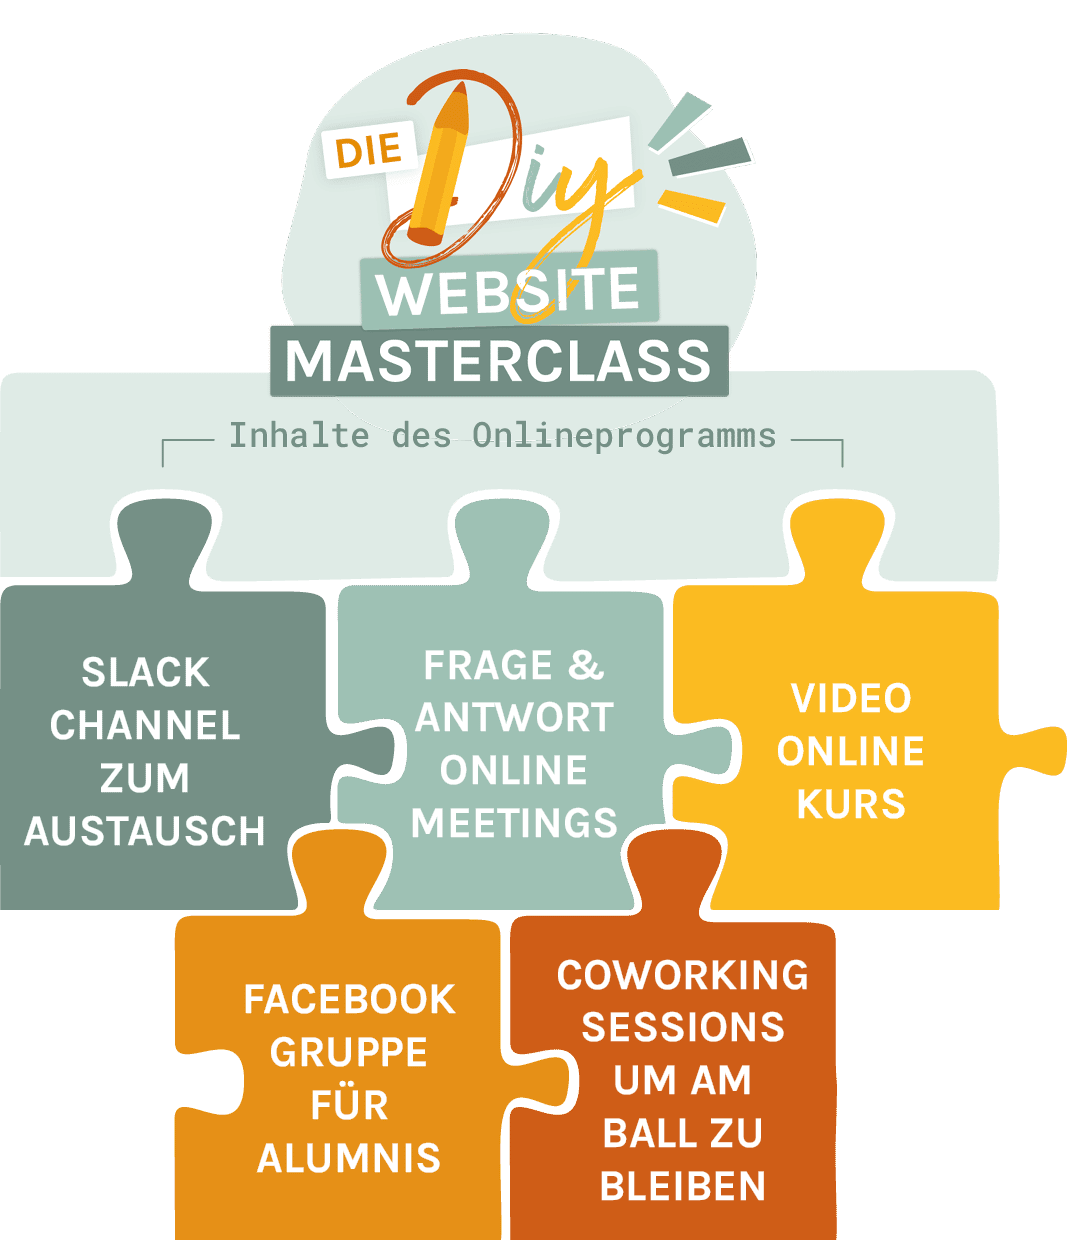 Die Bausteine des Online-Programms "Do-it-yourself Website Masterclass" beinhalten eine umfassende Anleitung dazu, wie du deine eigene Website mit WordPress selbst erstellst.